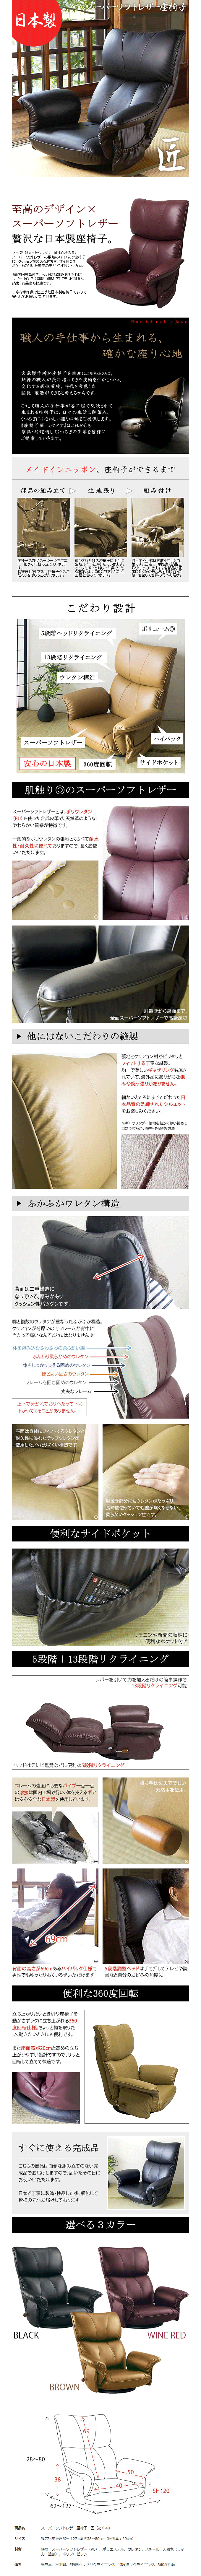 17485円 高い素材 肘付座椅子 ワインレッド 座イス スーパーソフトレザー 合成皮革 YS-1396HR-WIN